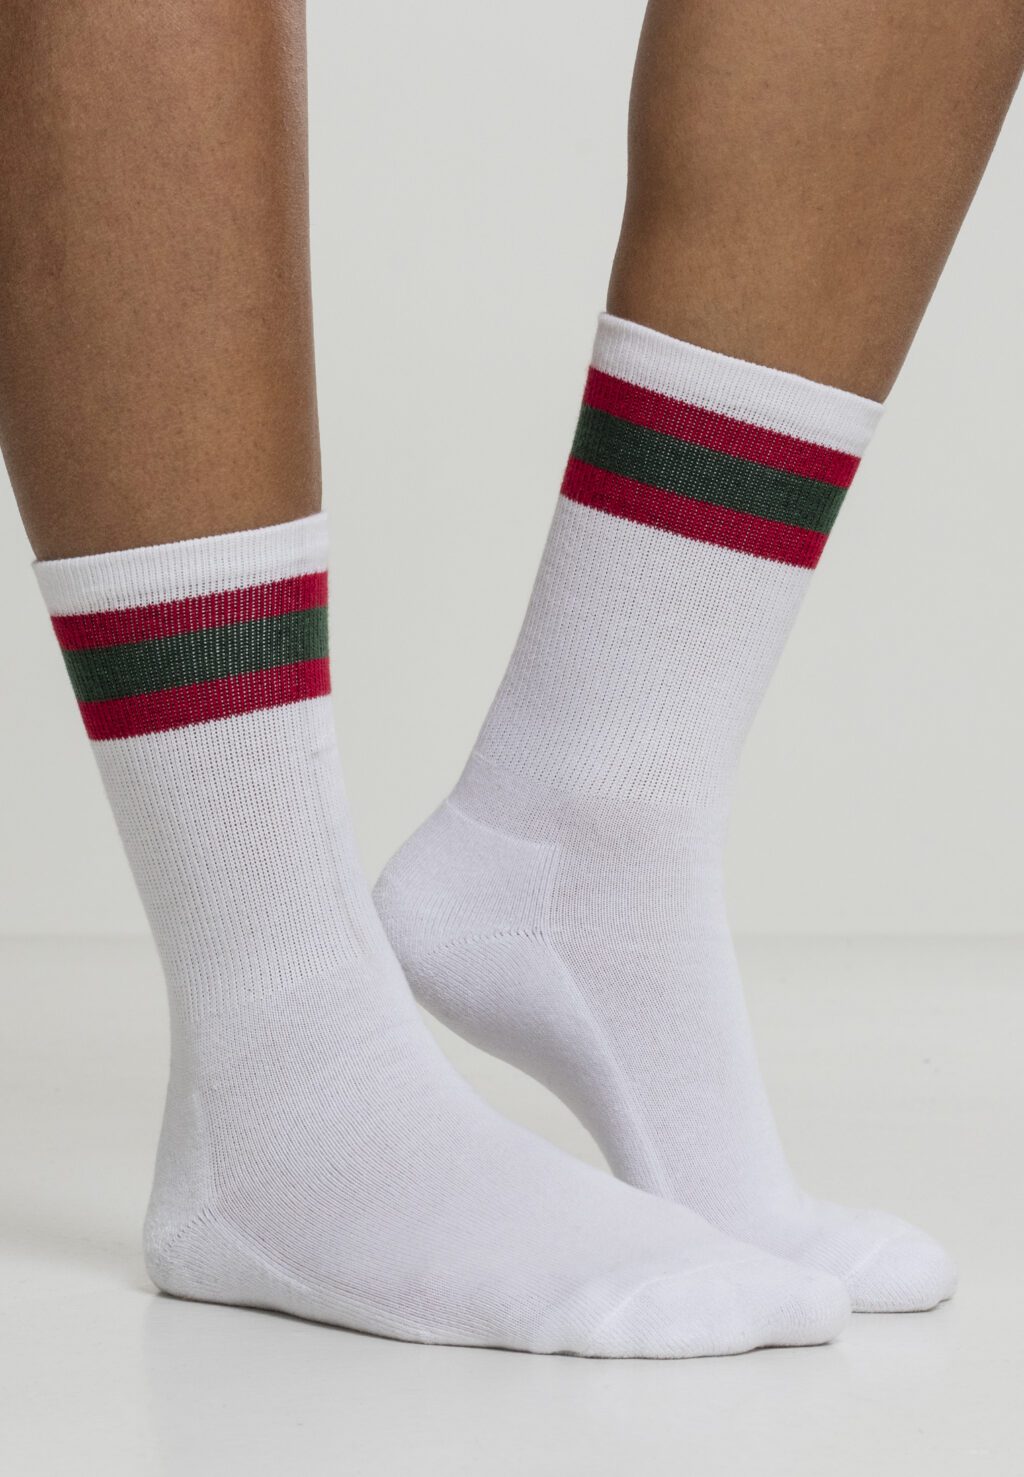 Stripy Sport Socks 2-Pack white/firered/green TB2159